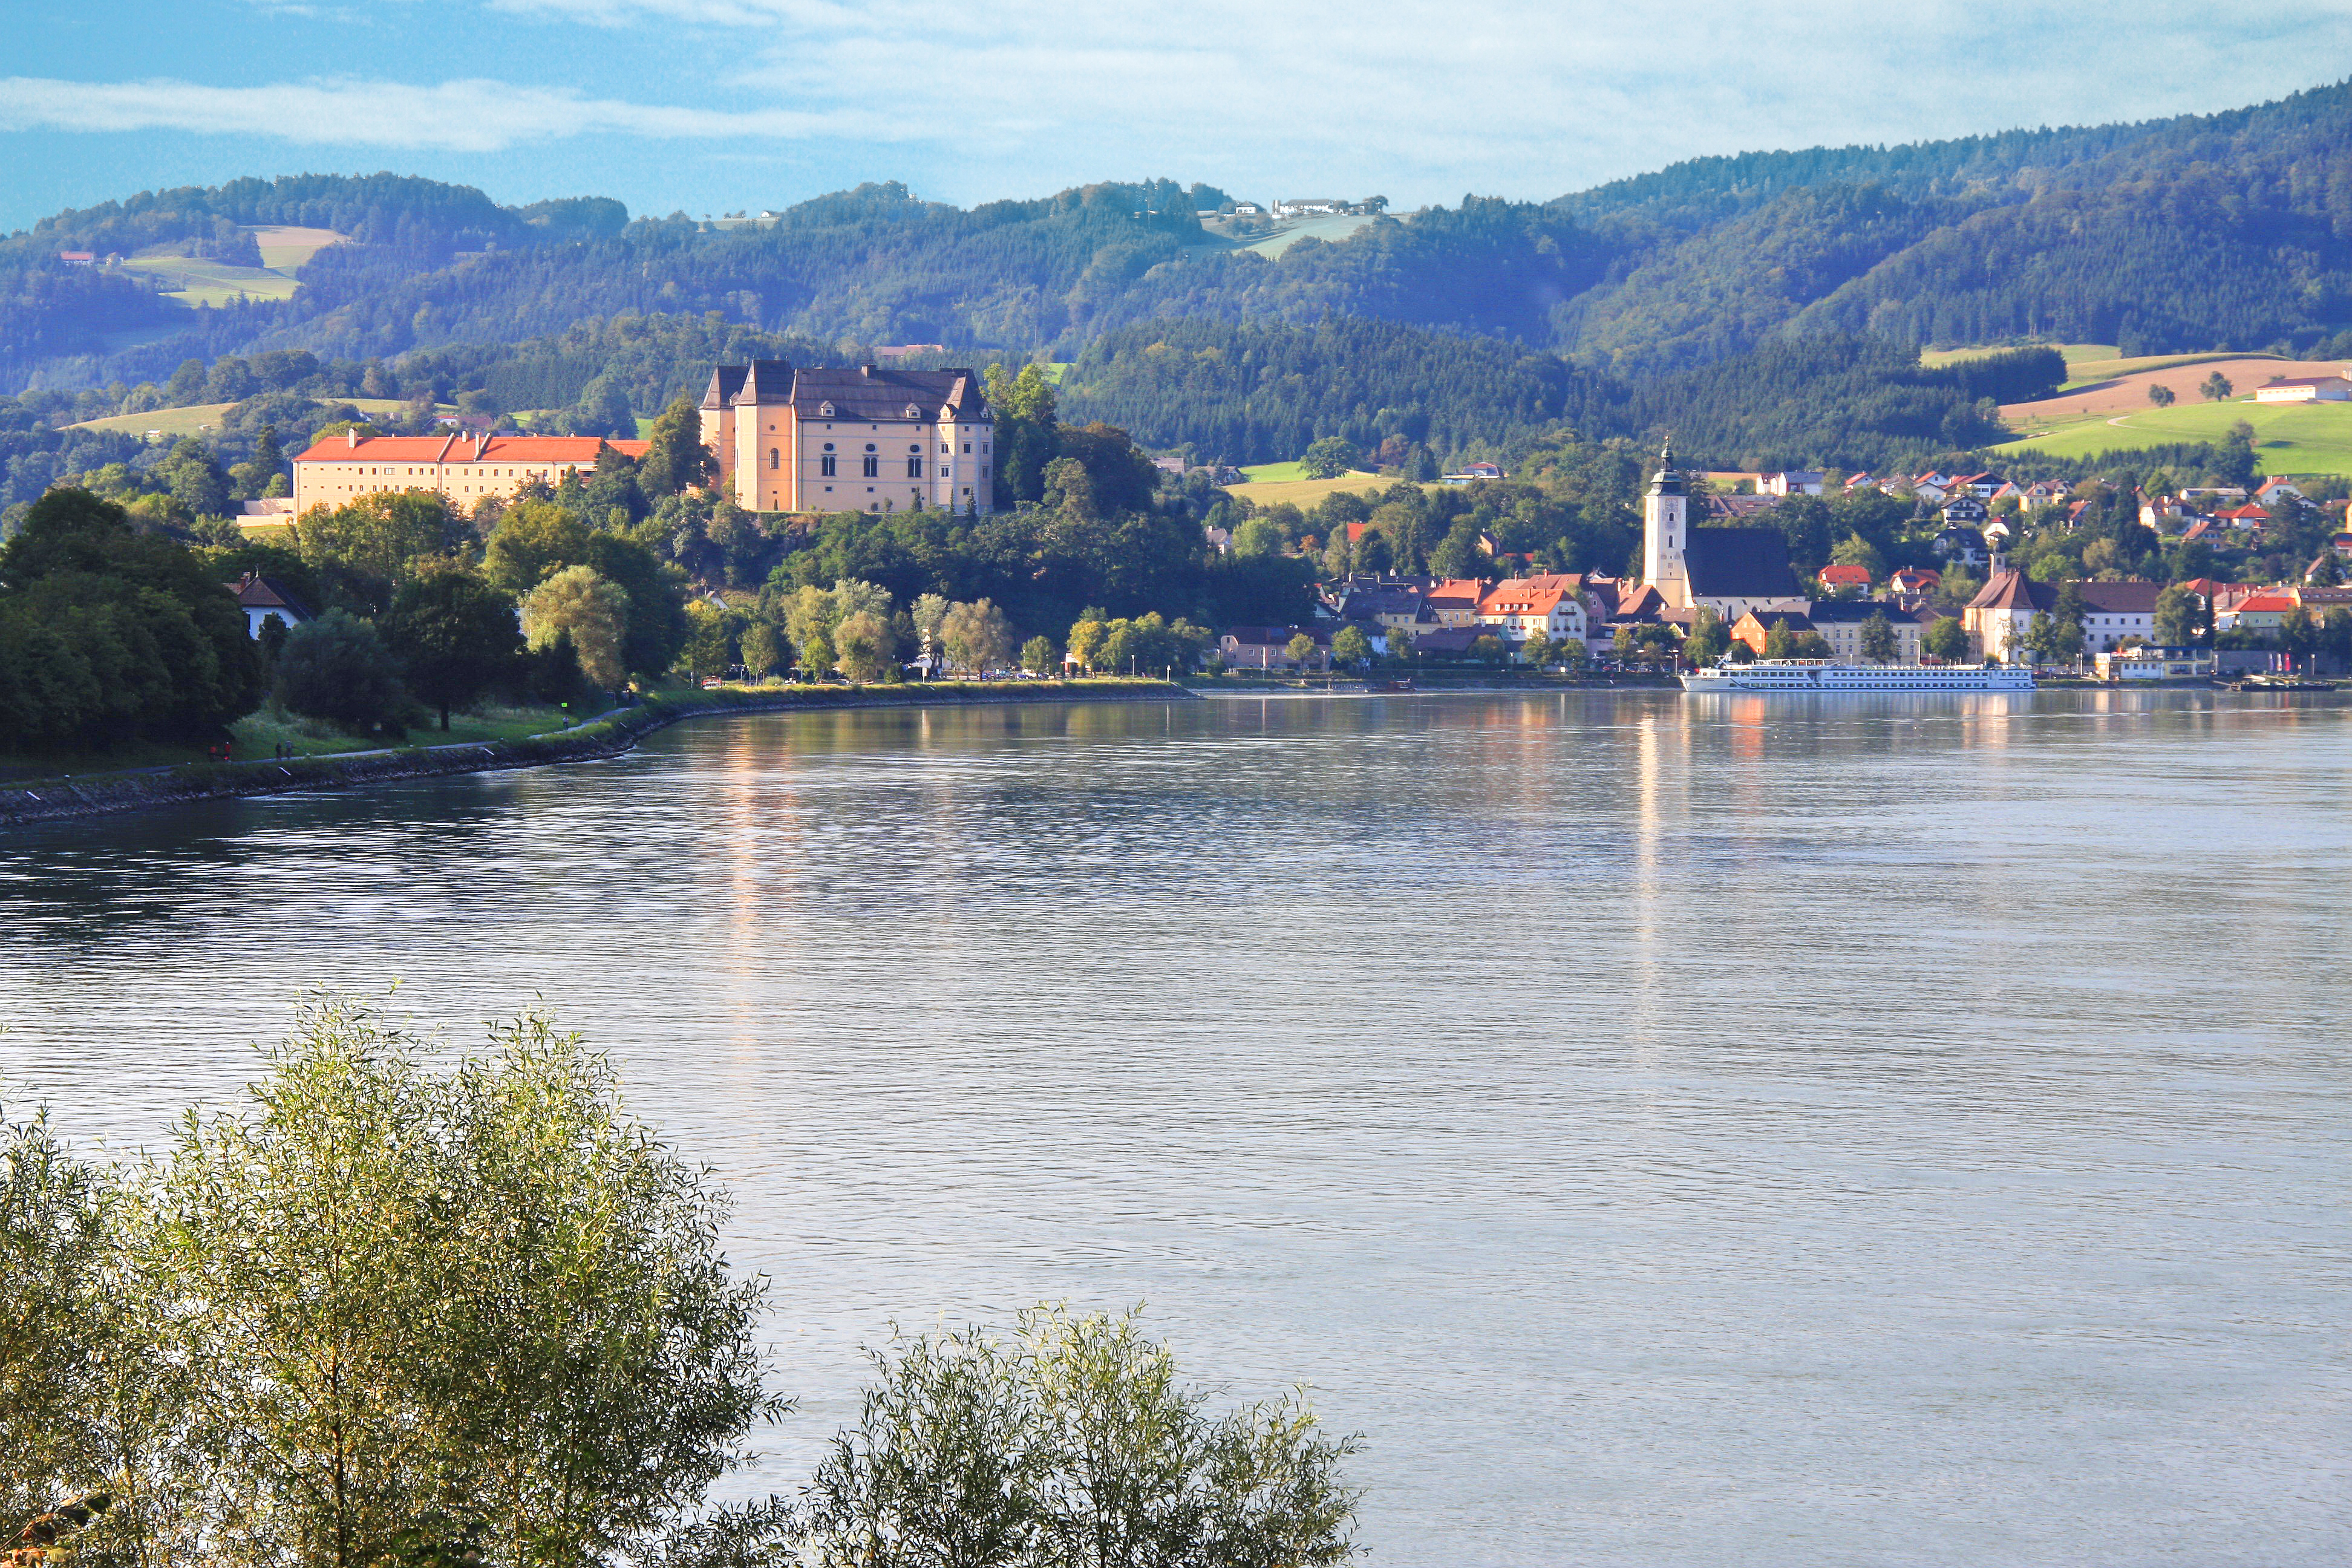 MS Primadonna Flusskreuzfahrt von Passau bis zum Eisernen Tor für 2 Personen